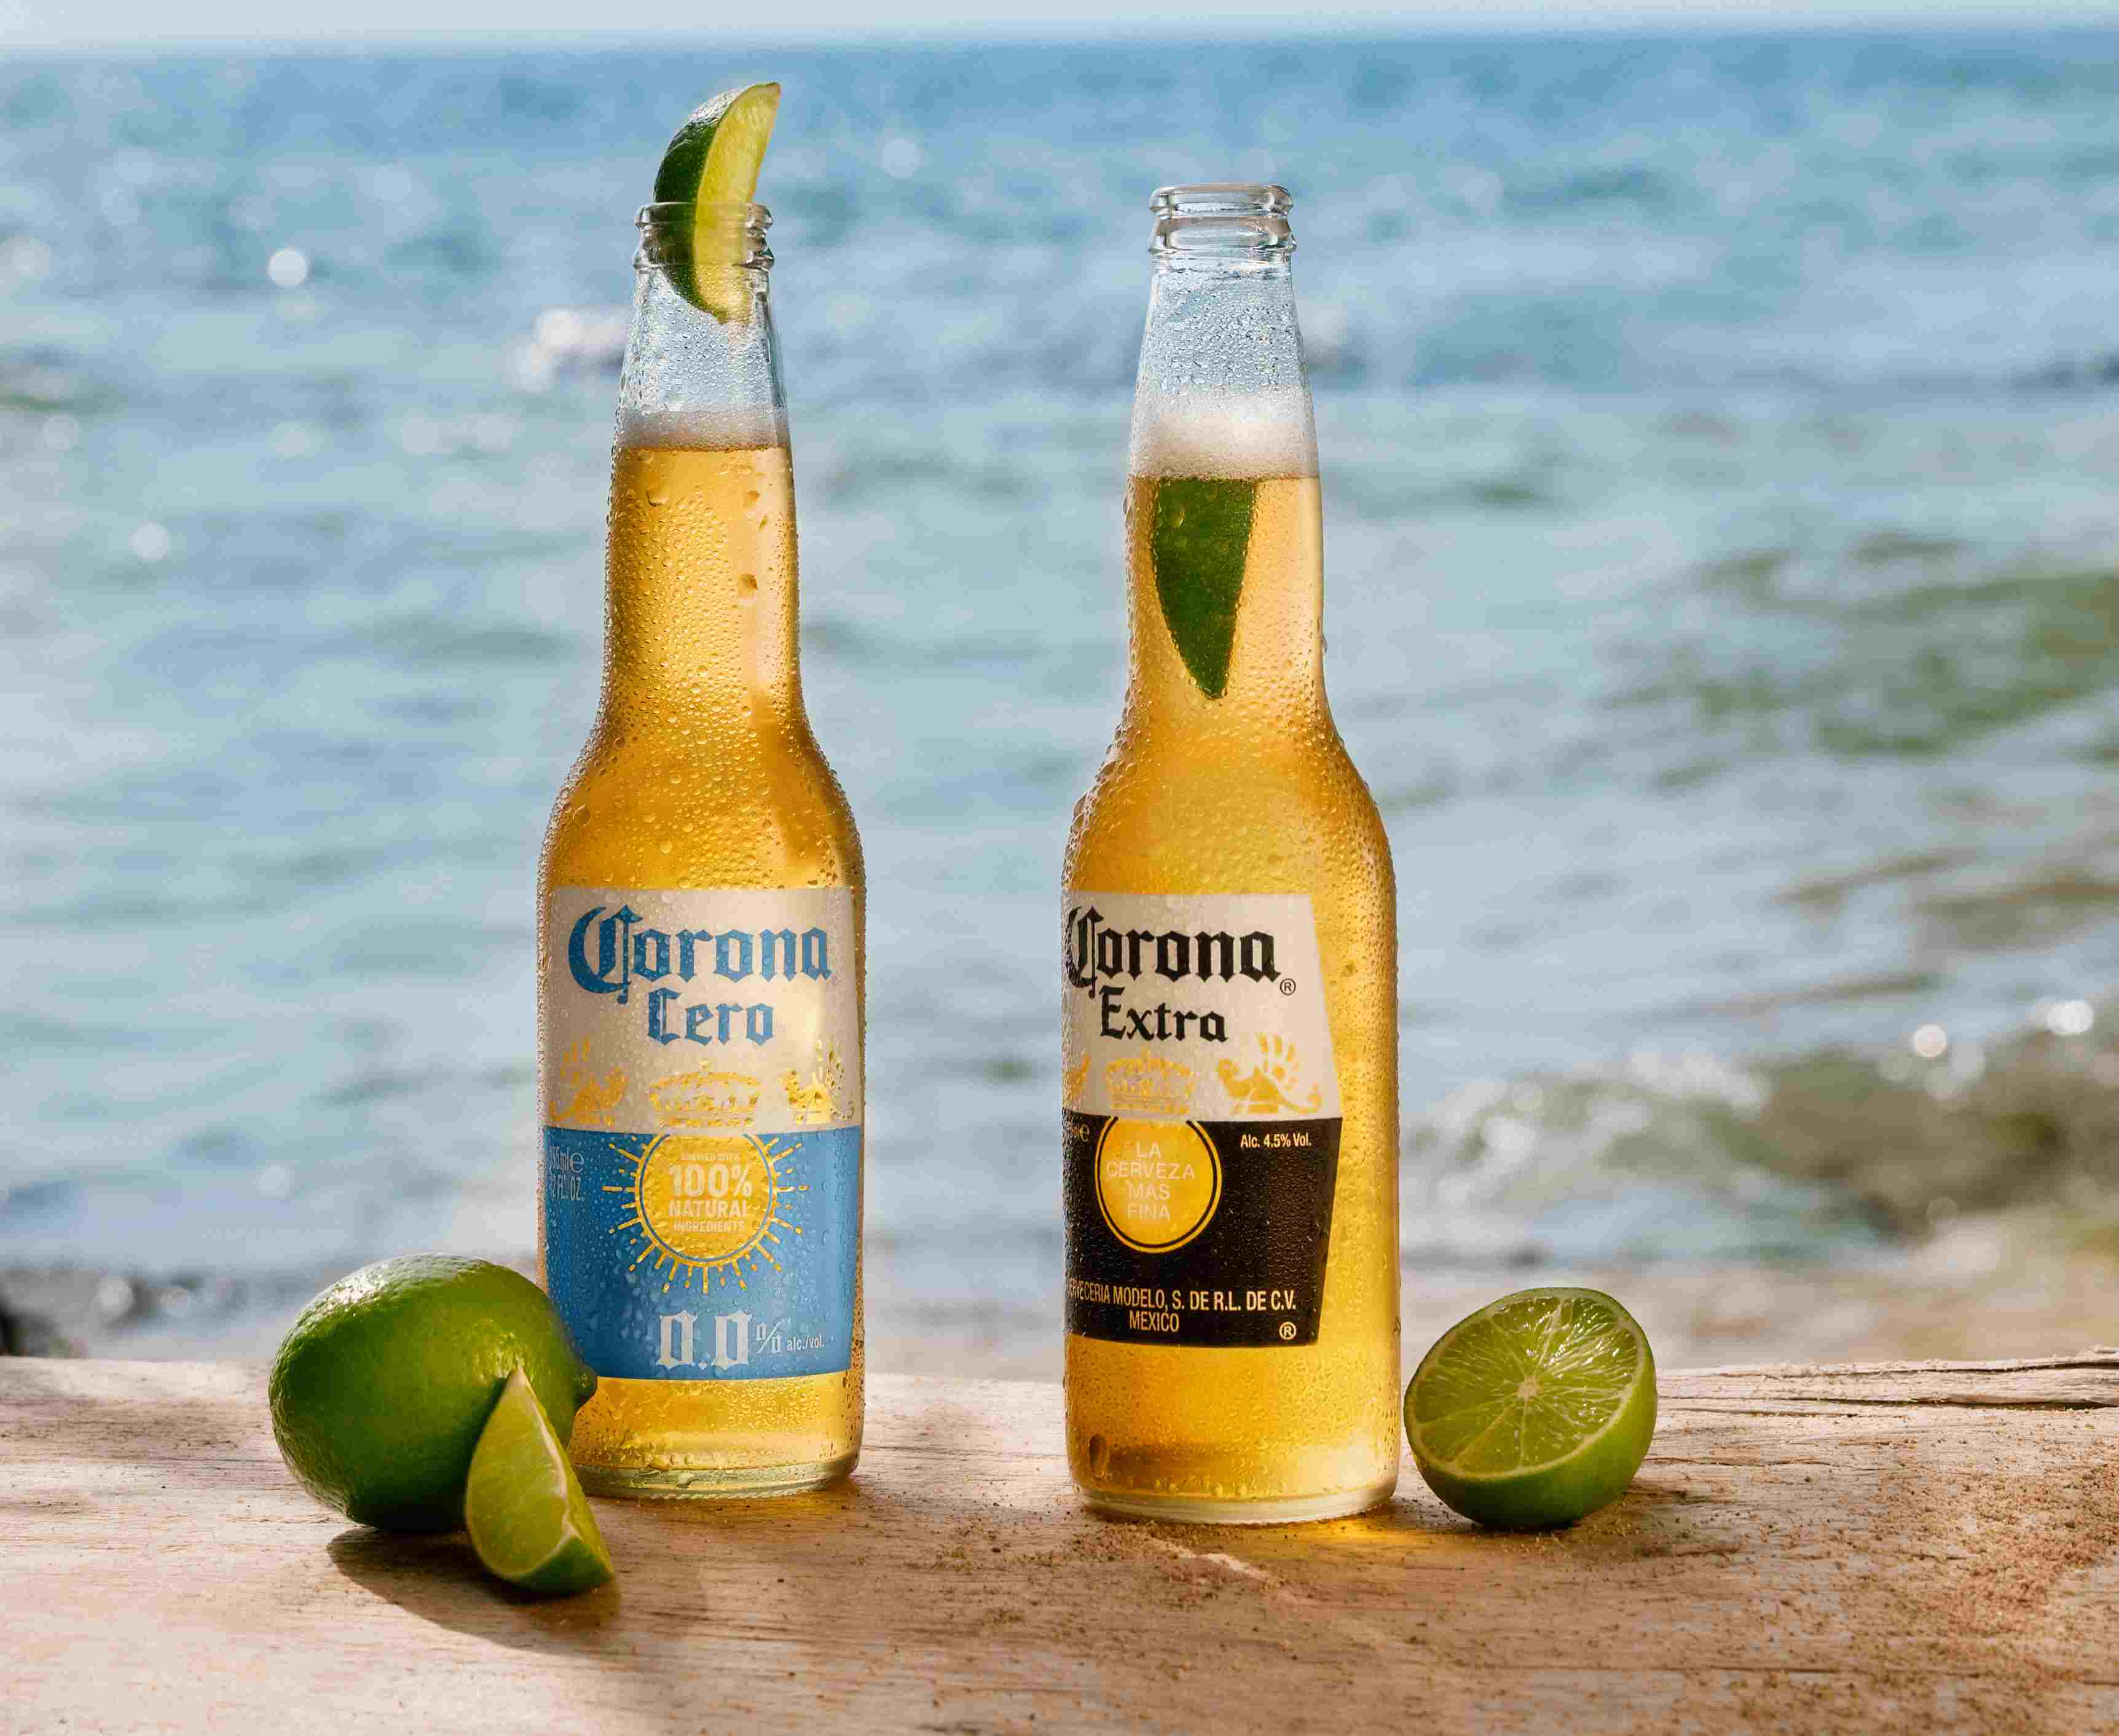 Corona Cero and Corona bottles